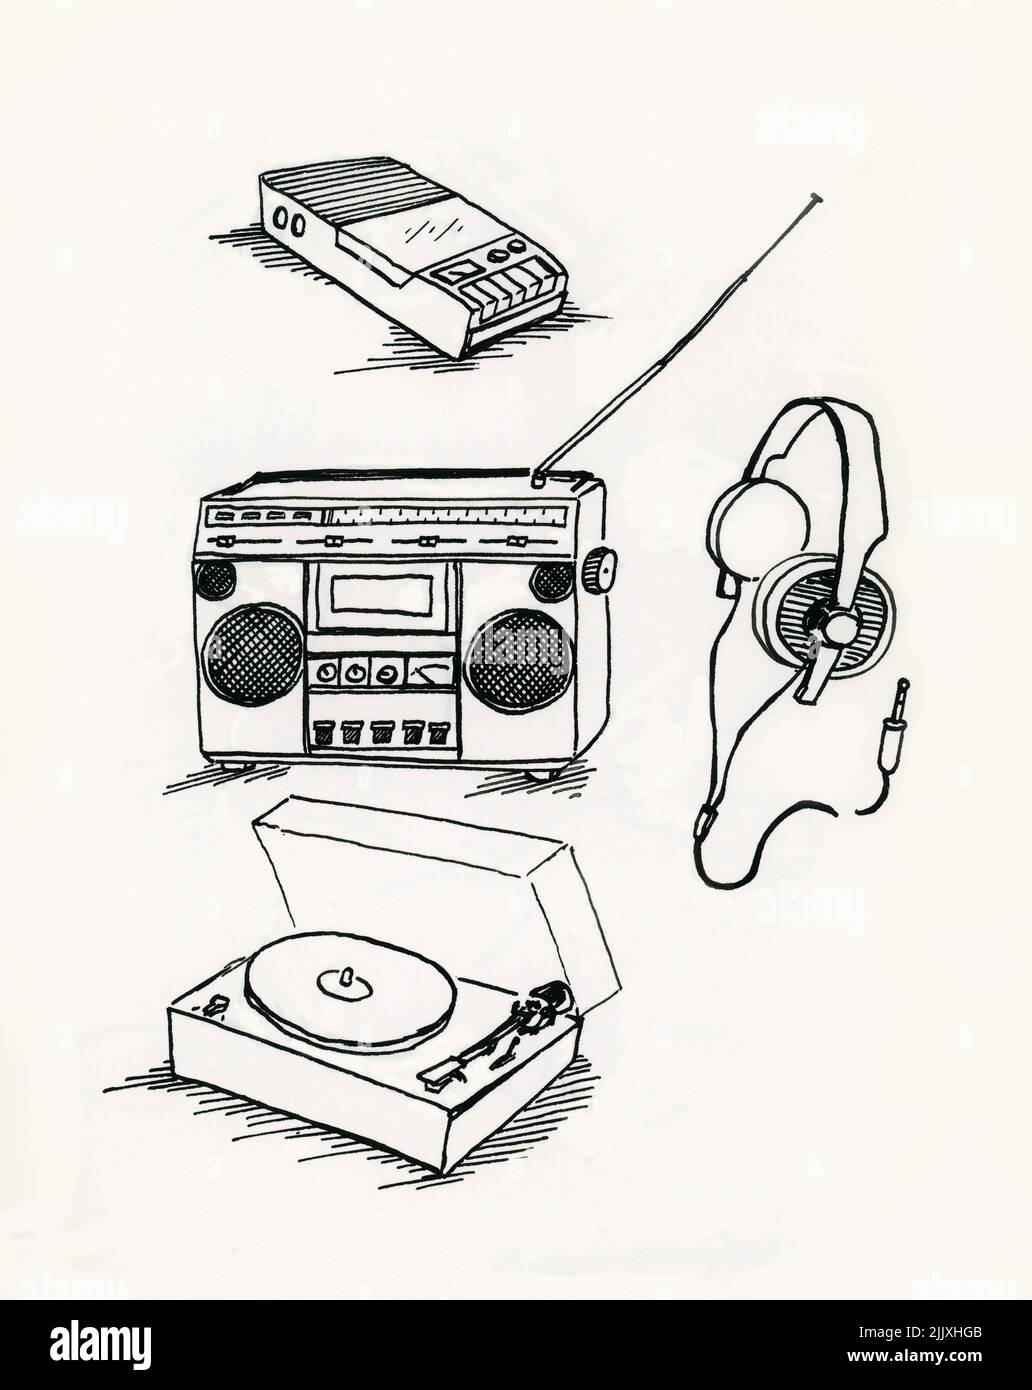 Equipo de audio de los años ochenta: Grabadora de casetes, radio, auriculares y tocadiscos Foto de stock